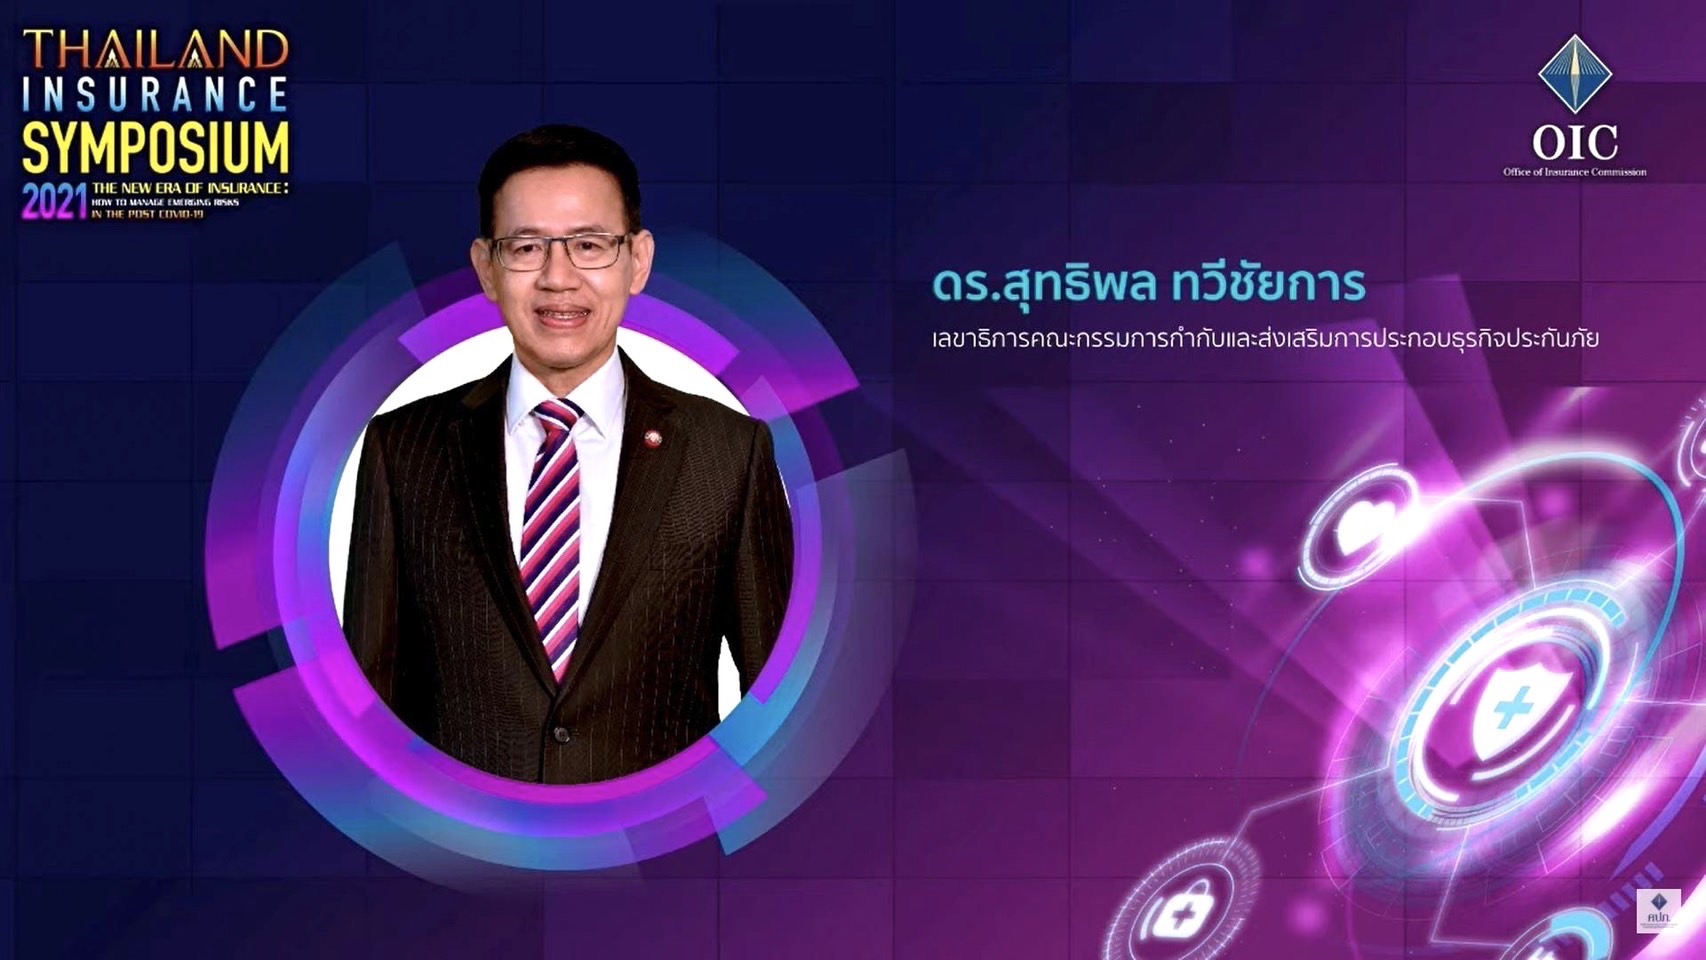 คปภ. จัดสัมมนาวิชาการประกันภัยประจำปี Thailand Insurance Symposium 2021 นำภาคธุรกิจประกันภัยบริหารความเสี่ยงจากอุบัติใหม่ในยุคหลัง COVID-19